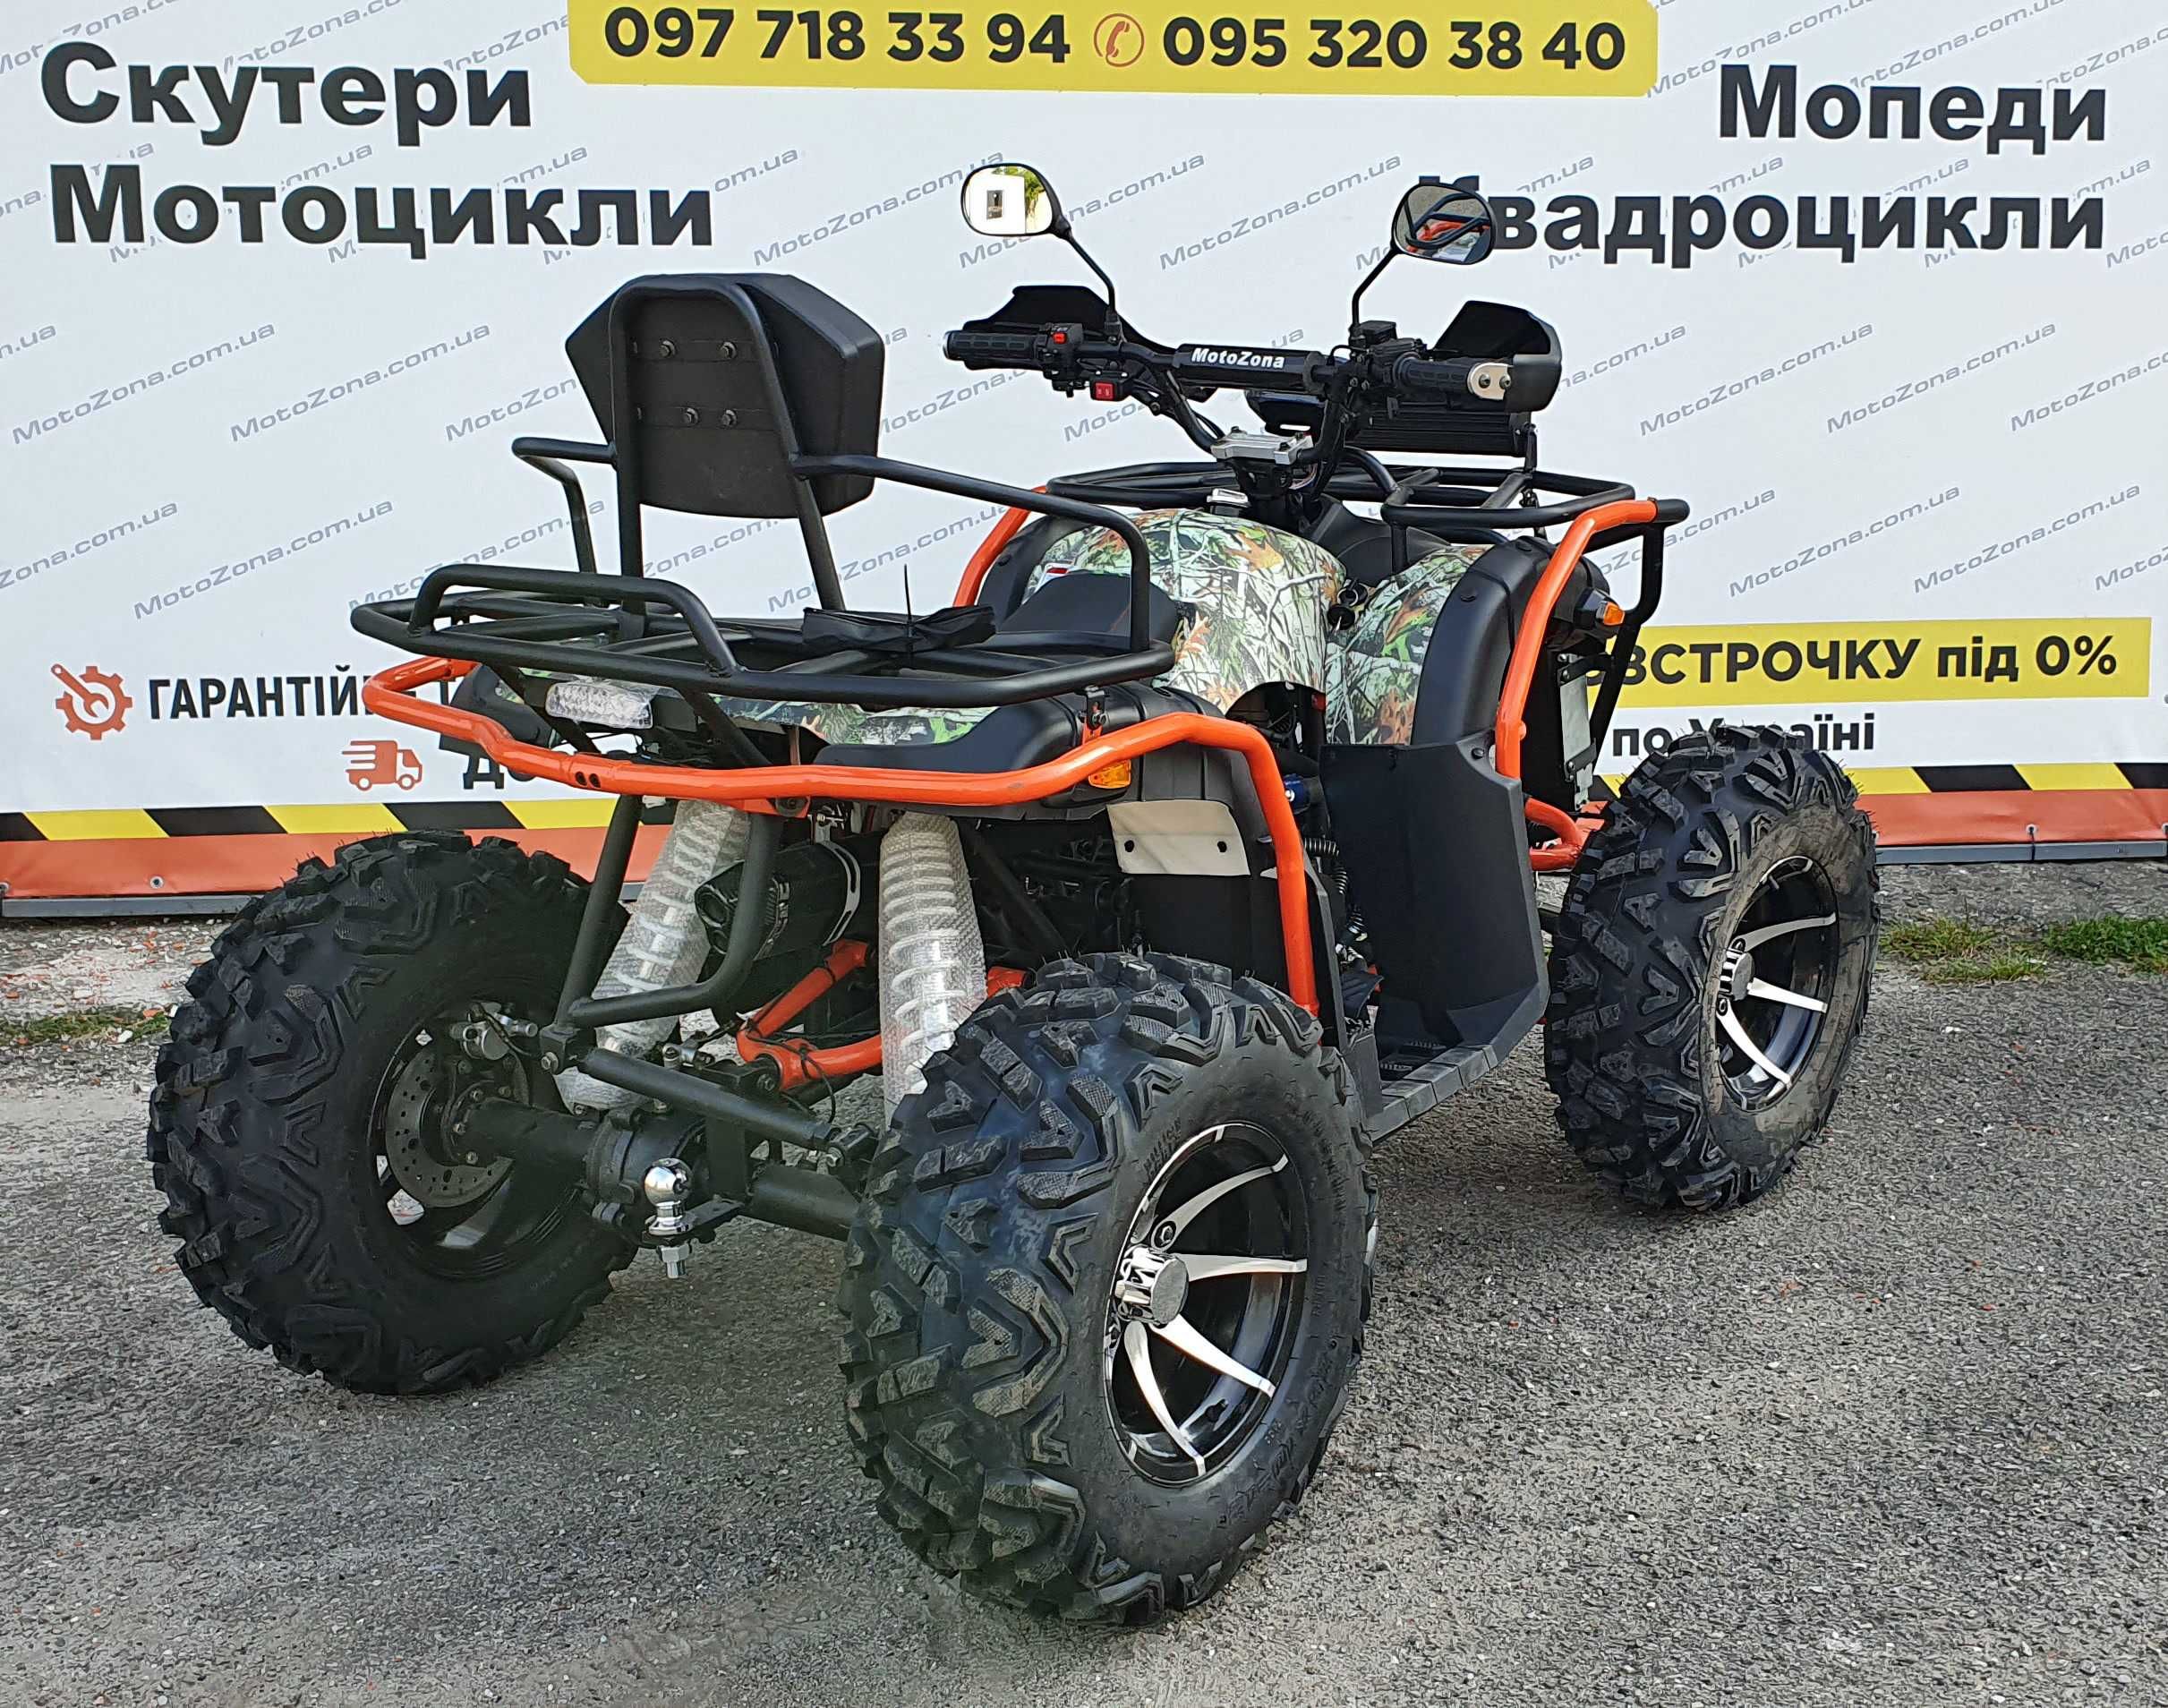 ATV Хамер 300куб. 4х4WD Новий! +Доставка по Укр +Гарантія! Квадроцикл